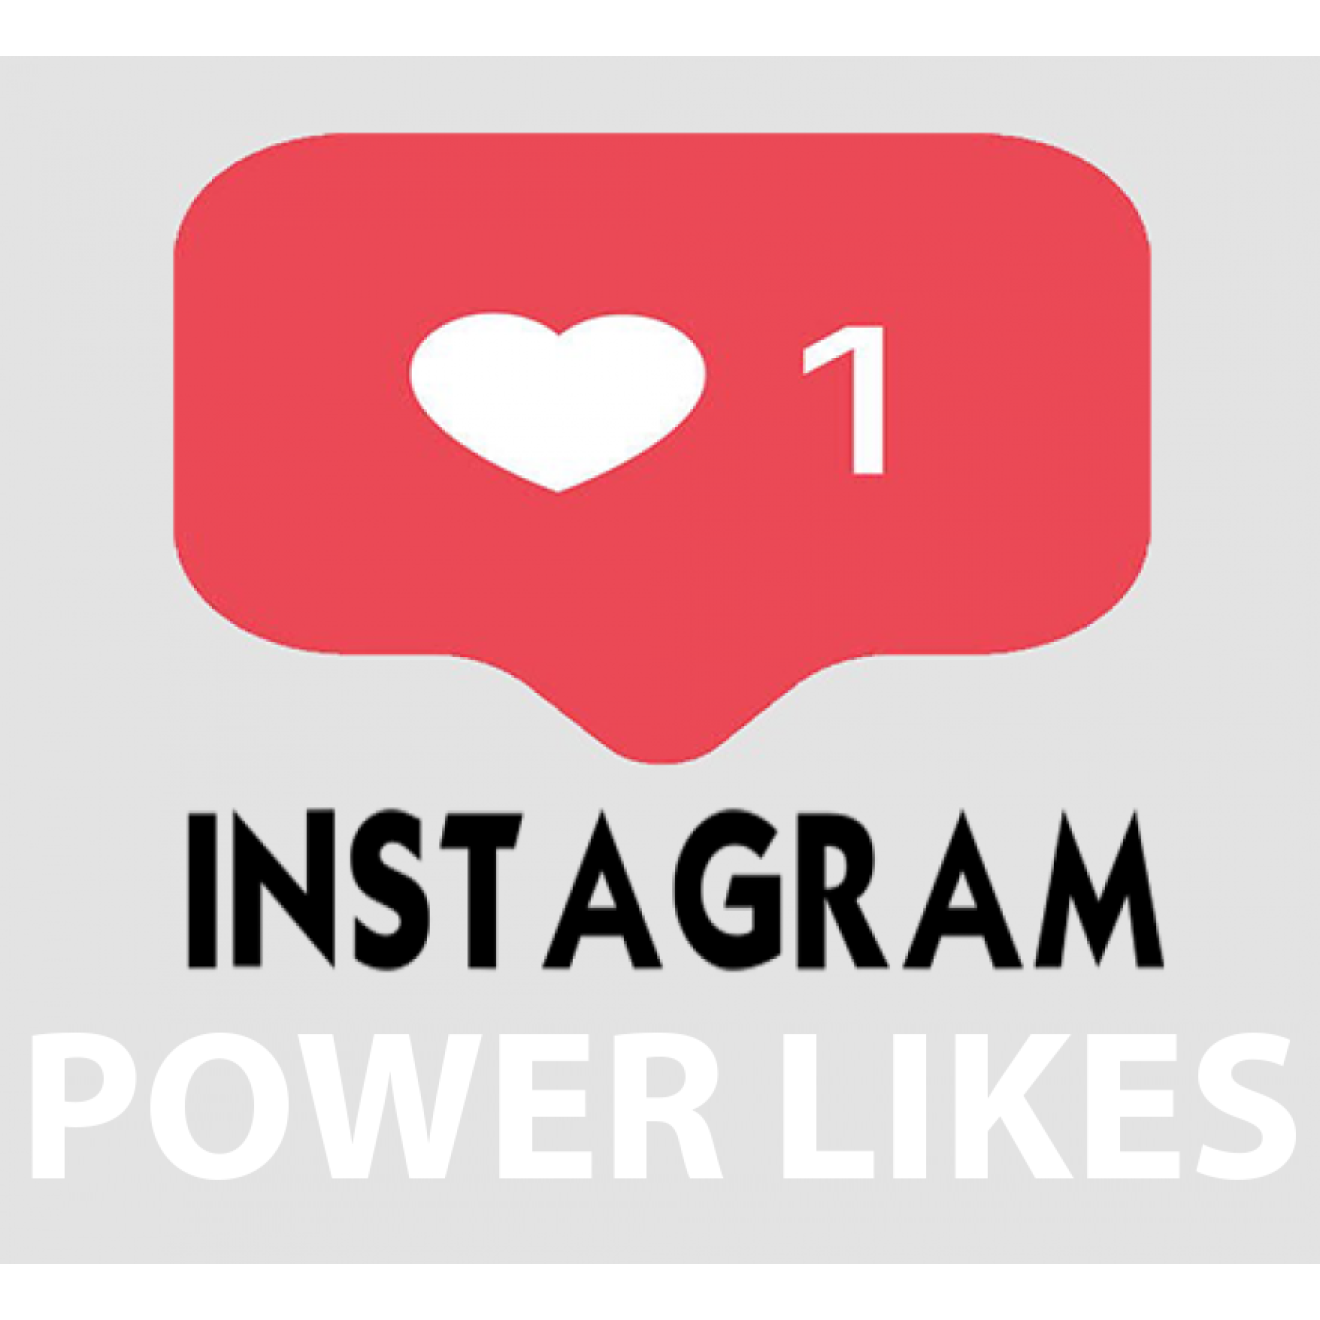 10000 Instagram Power Likes / Gefällt mir Angaben für Dich